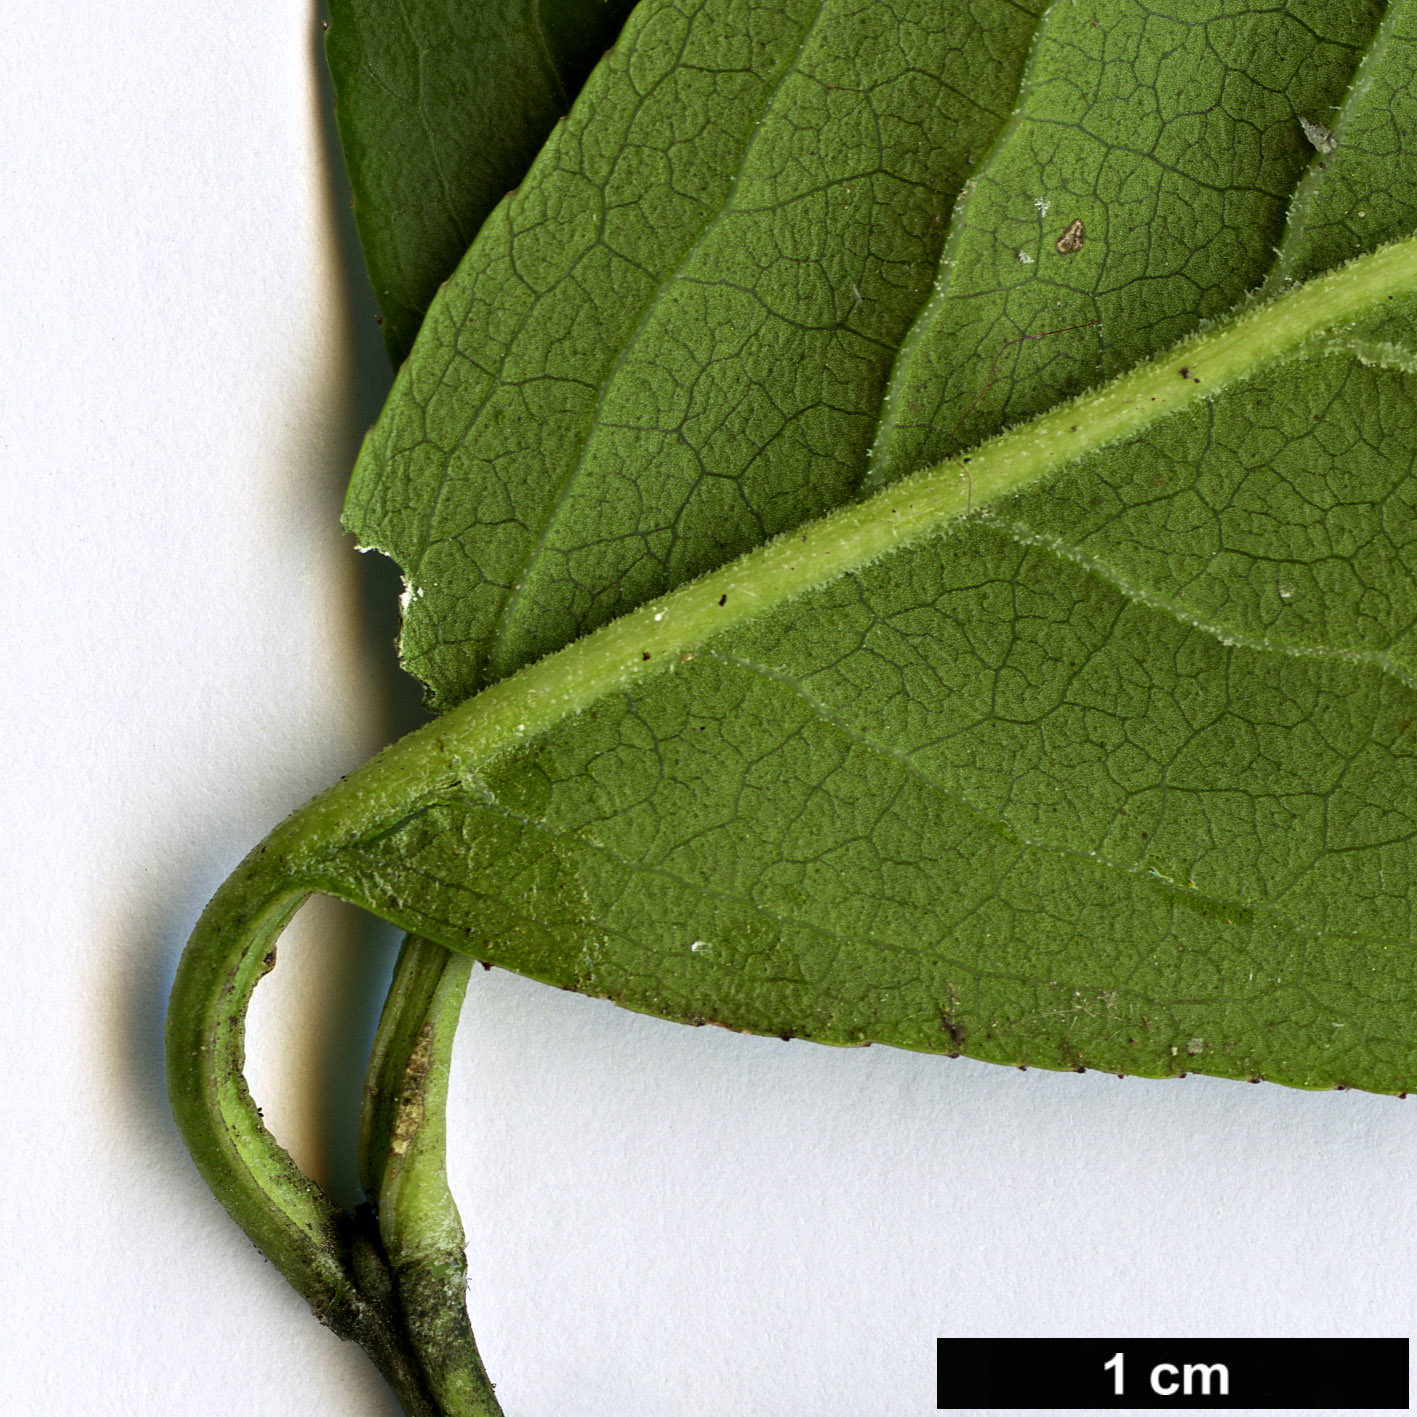 High resolution image: Family: Celastraceae - Genus: Euonymus - Taxon: hamiltonianus - SpeciesSub: var. lanceifolius